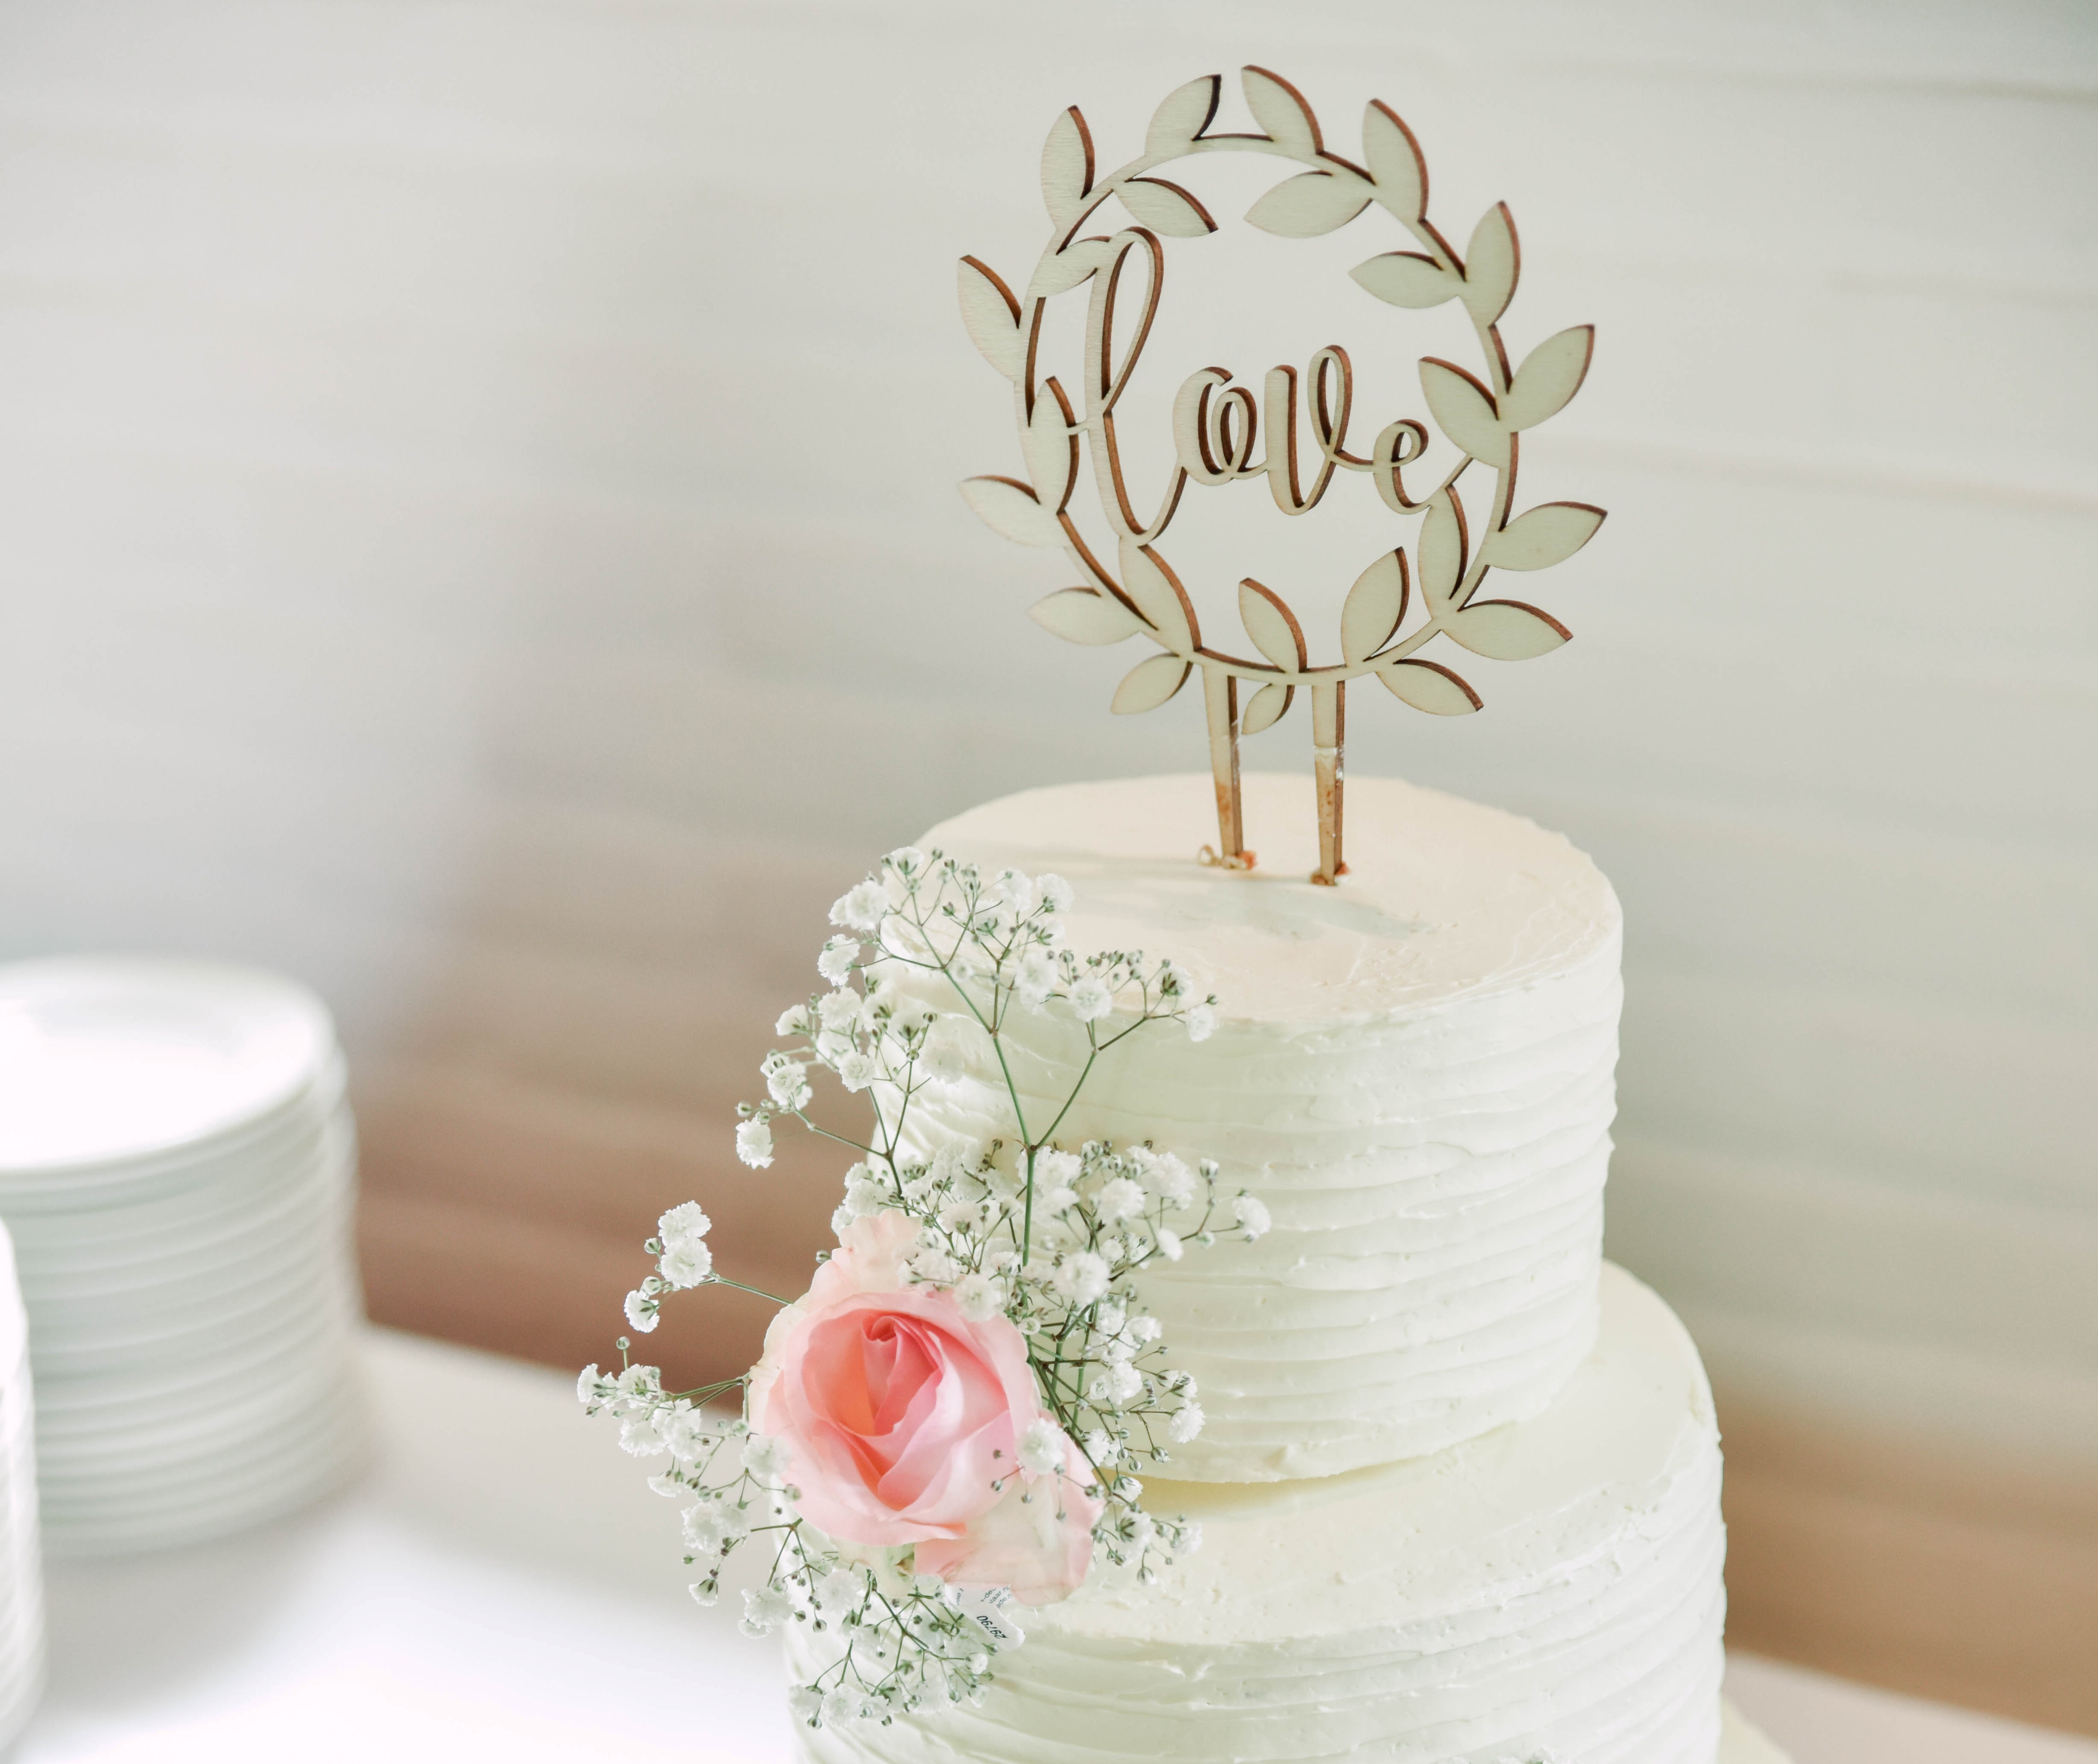 Nejedlé dekorace na dort si mohou vzít manželé na památku